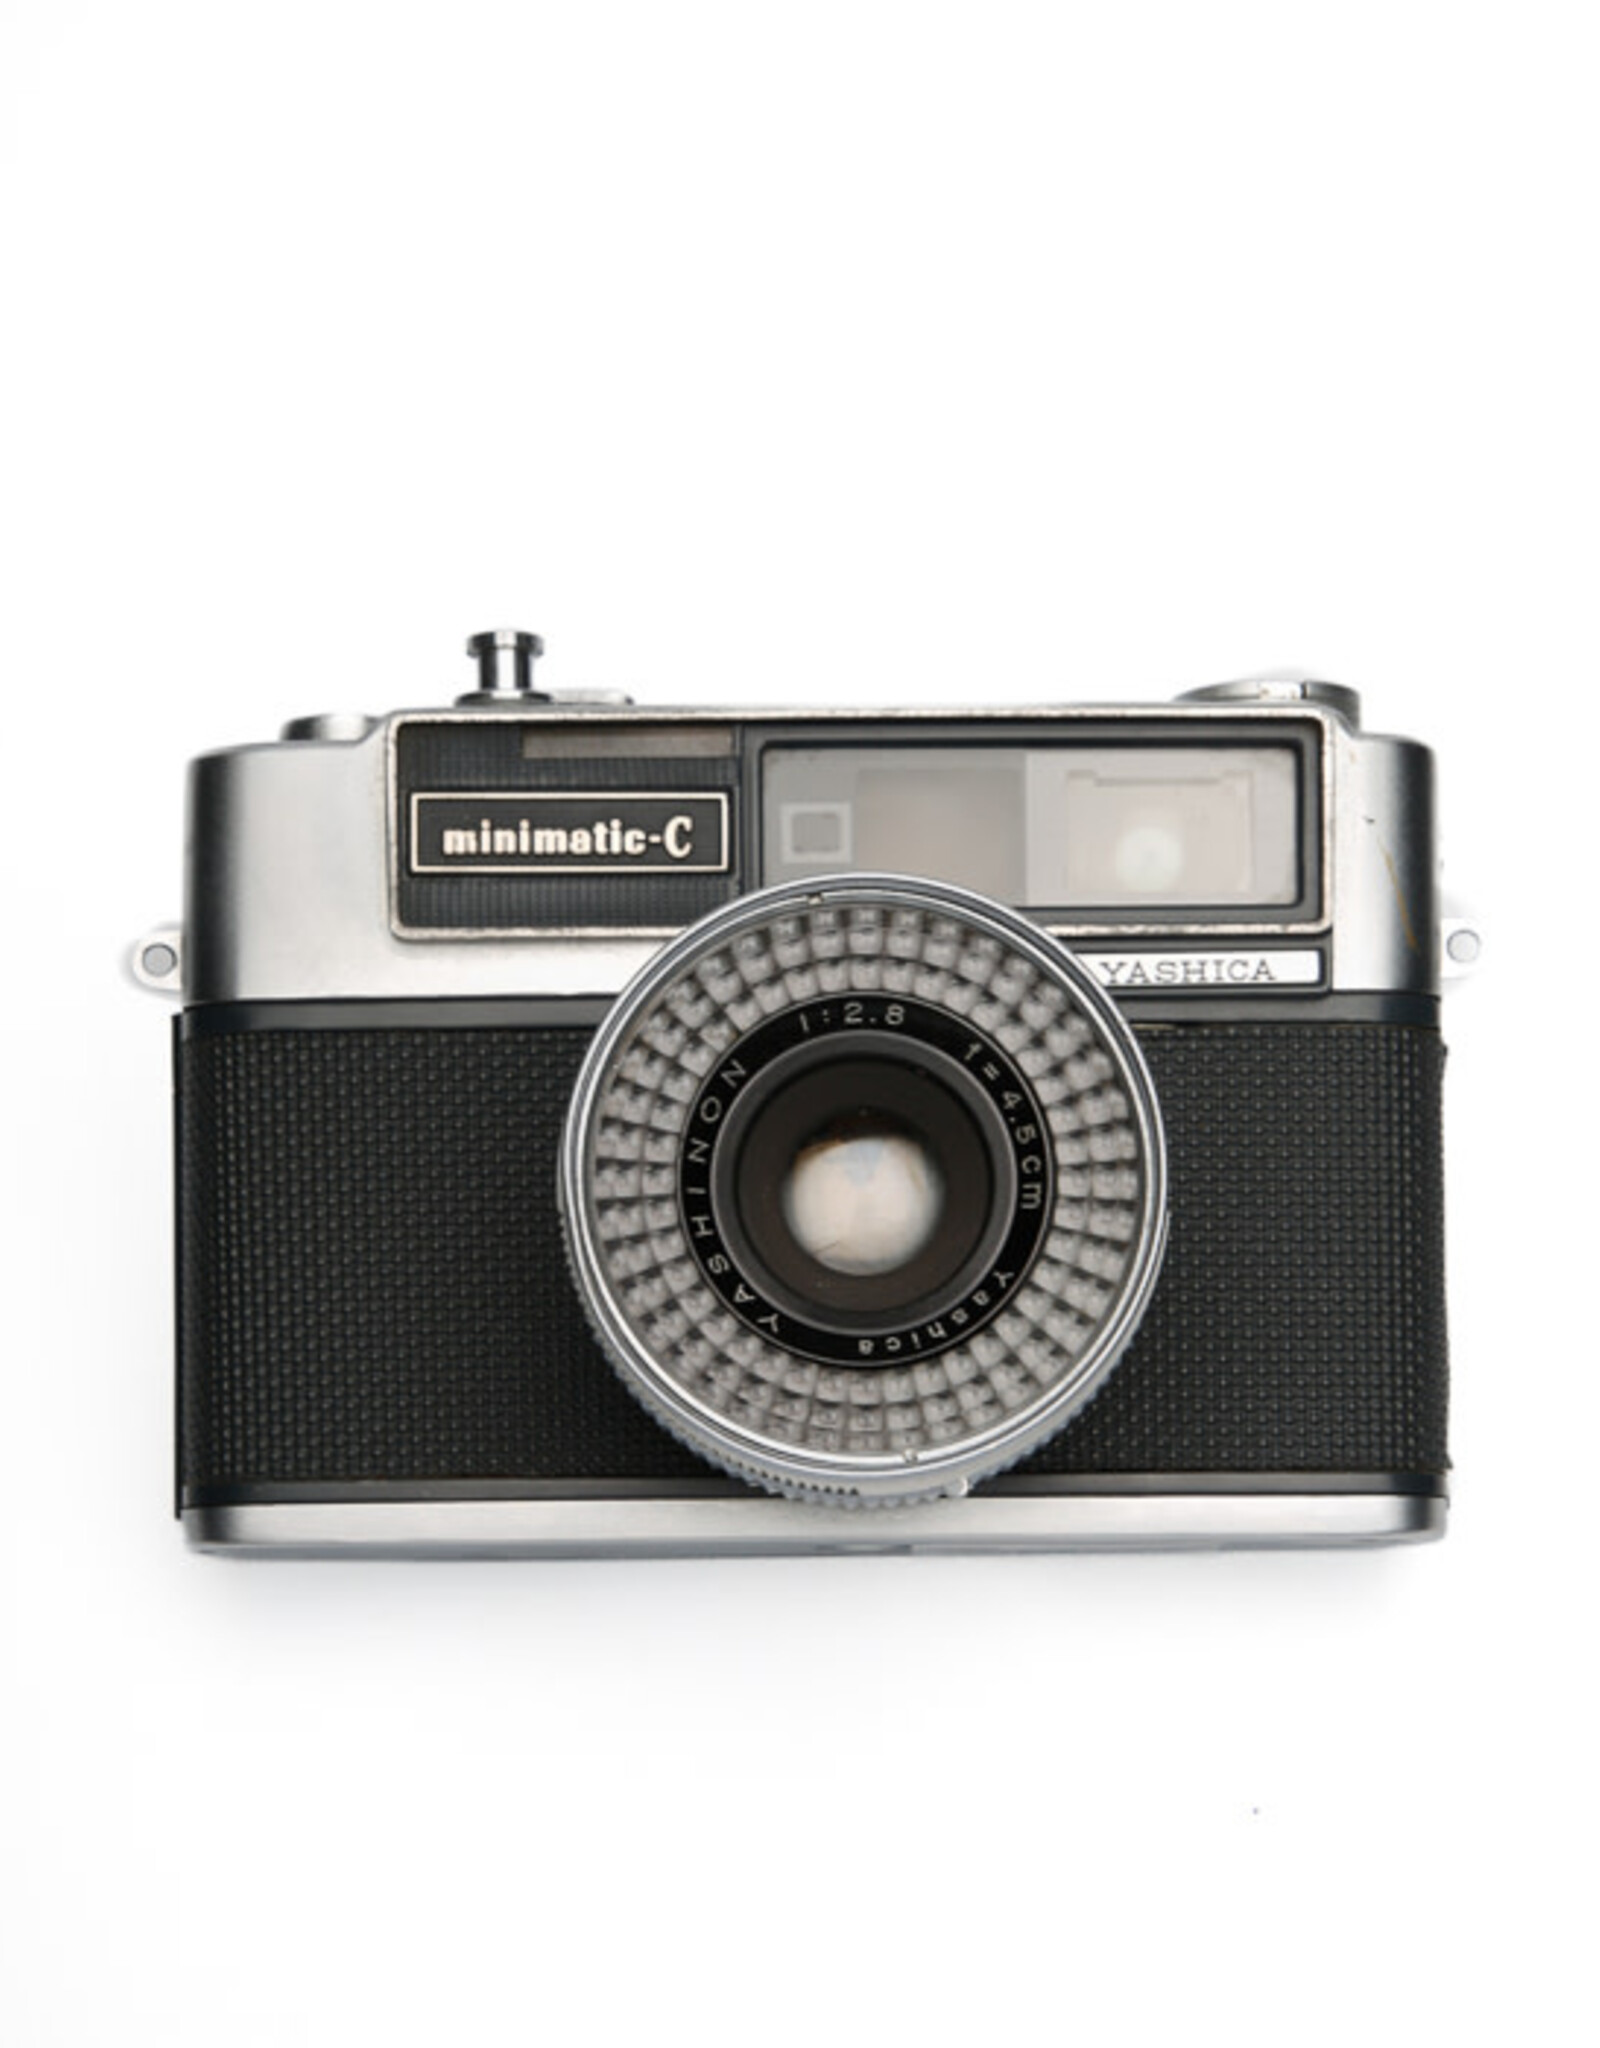 Yashica YASHICA Minimatic-C 35mm Rangefinder Film Camera